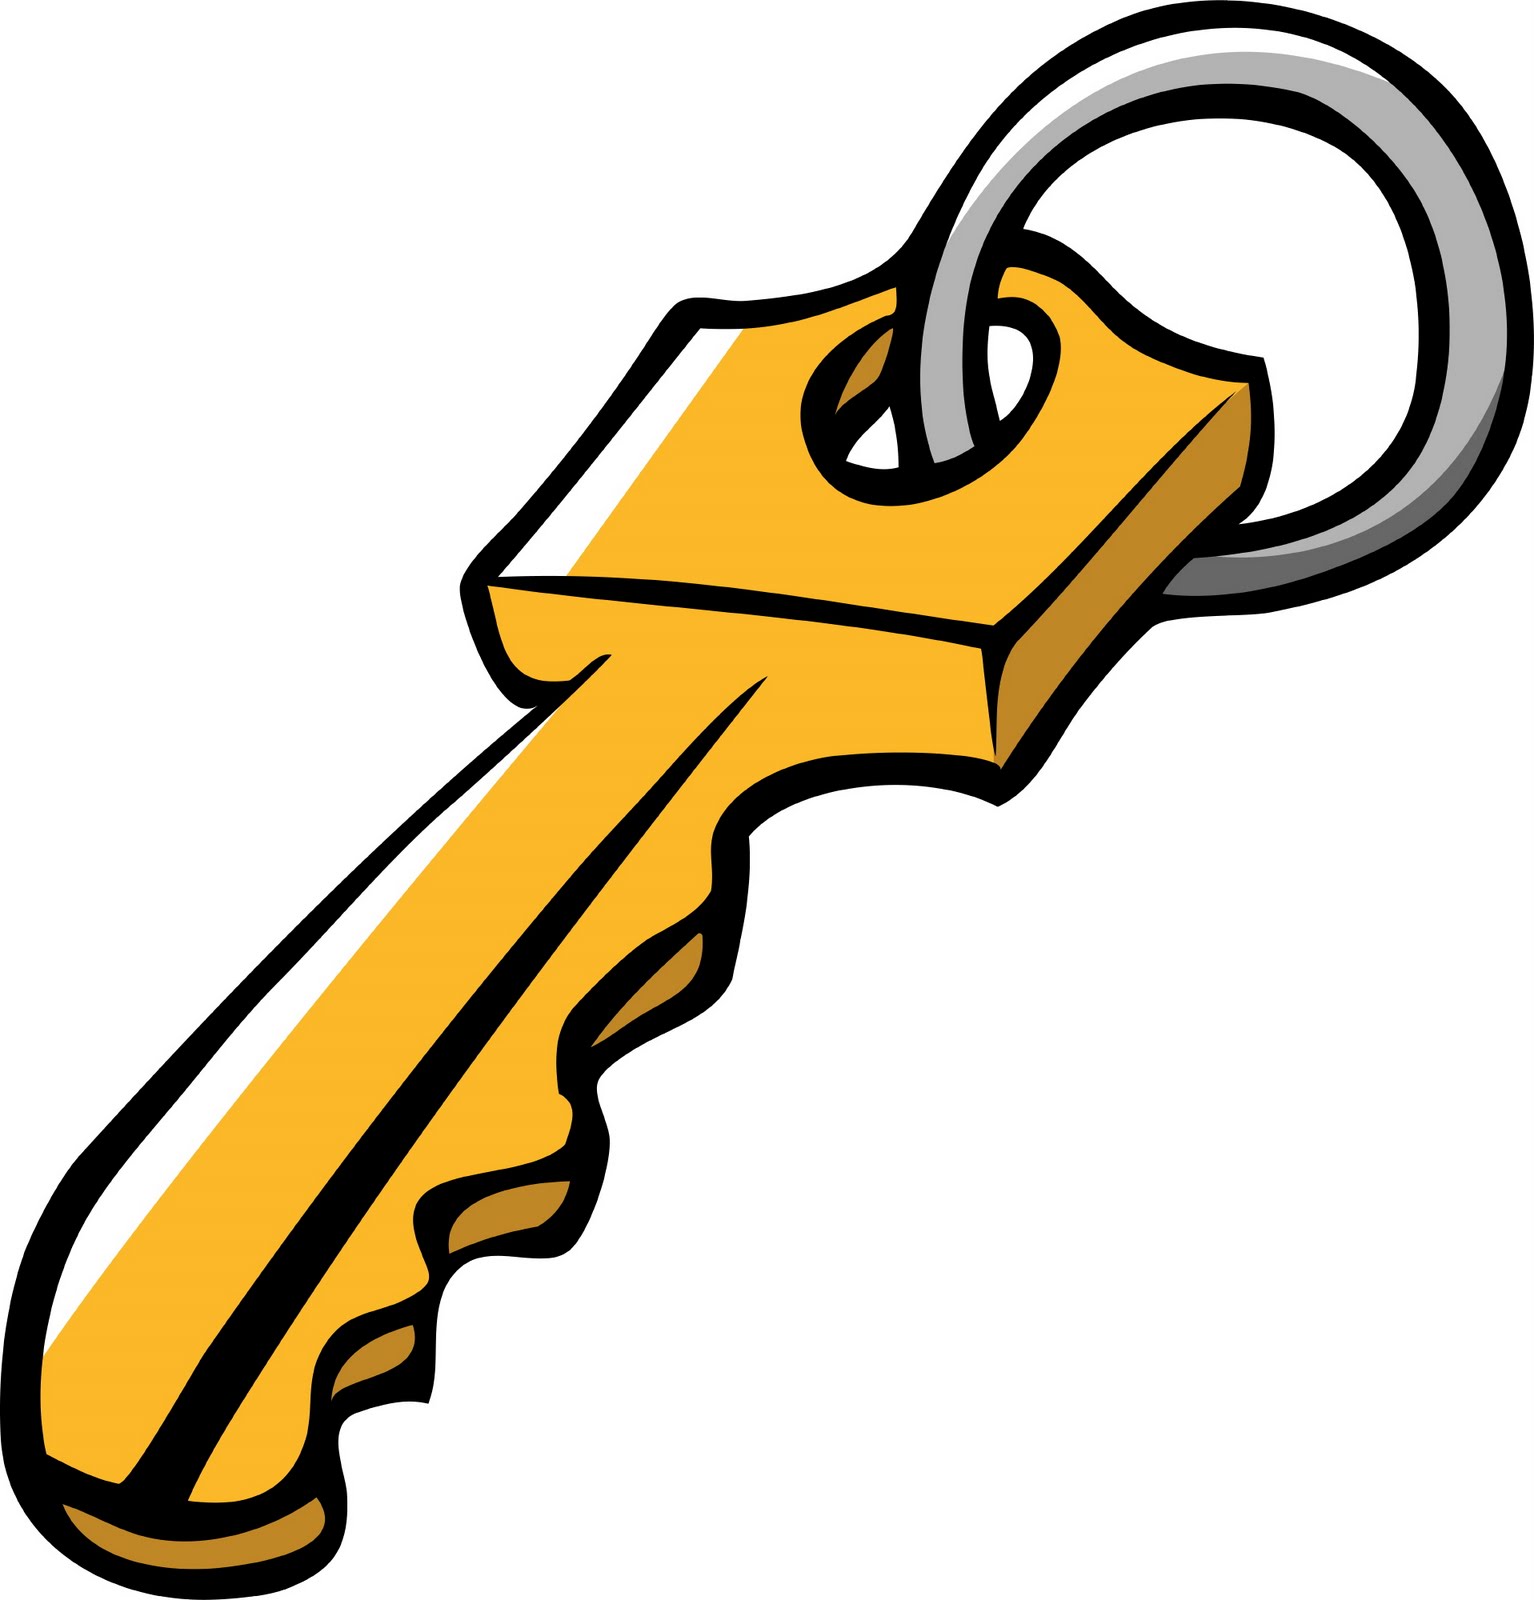 Free clipart door key